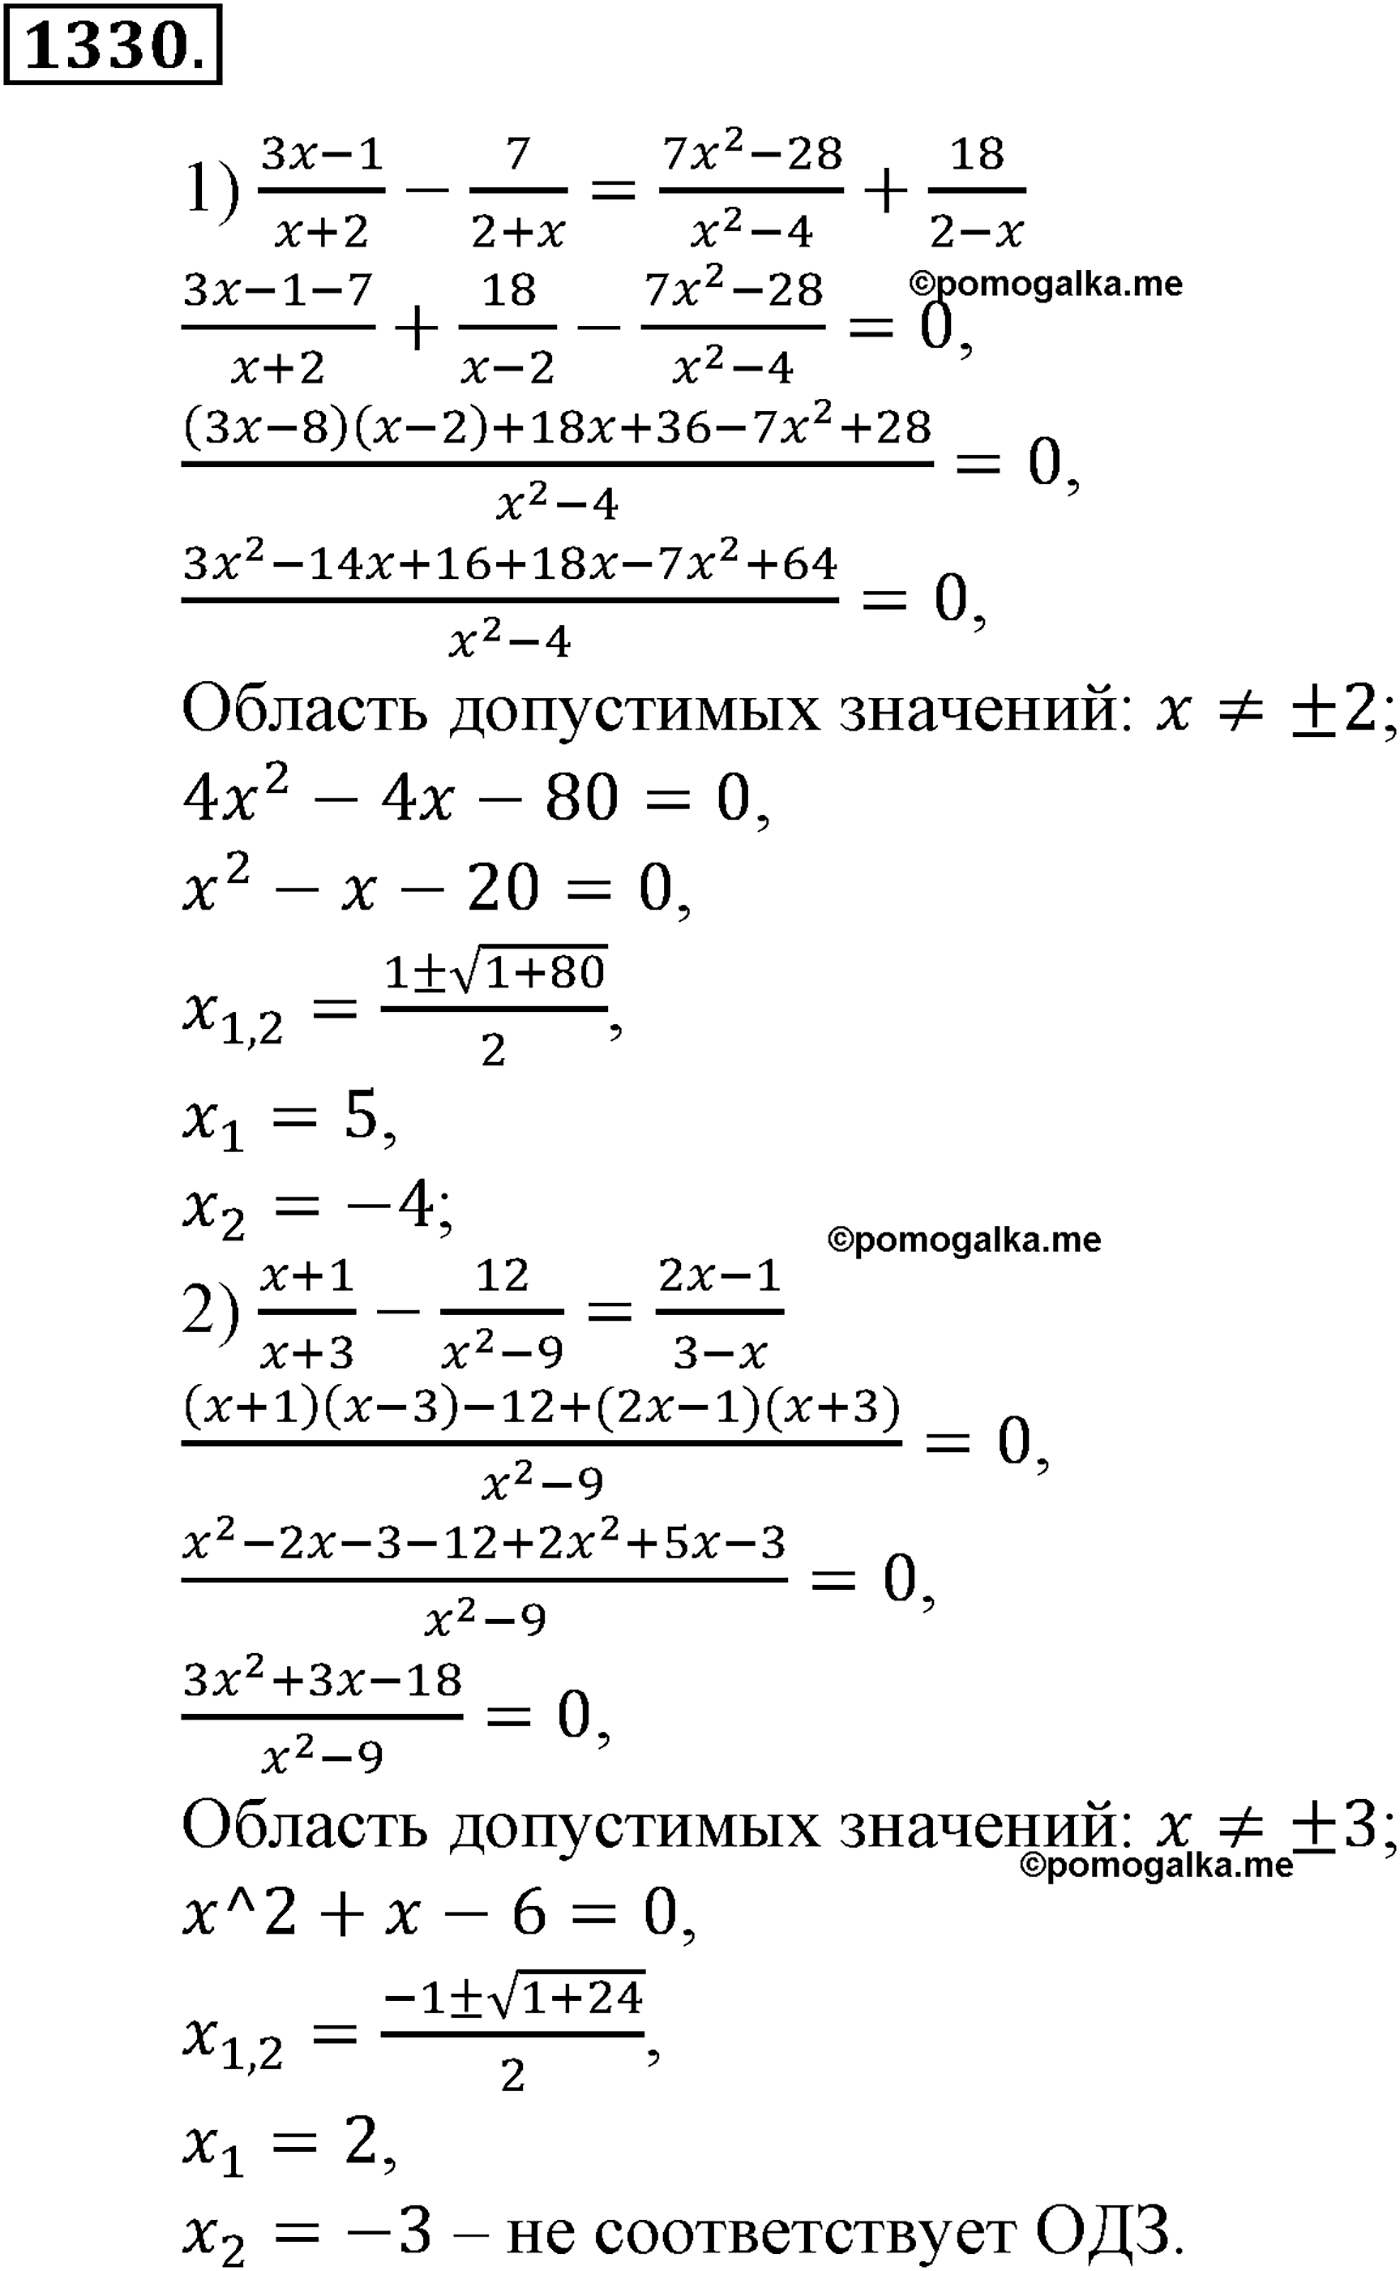 разбор задачи №1330 по алгебре за 10-11 класс из учебника Алимова, Колягина